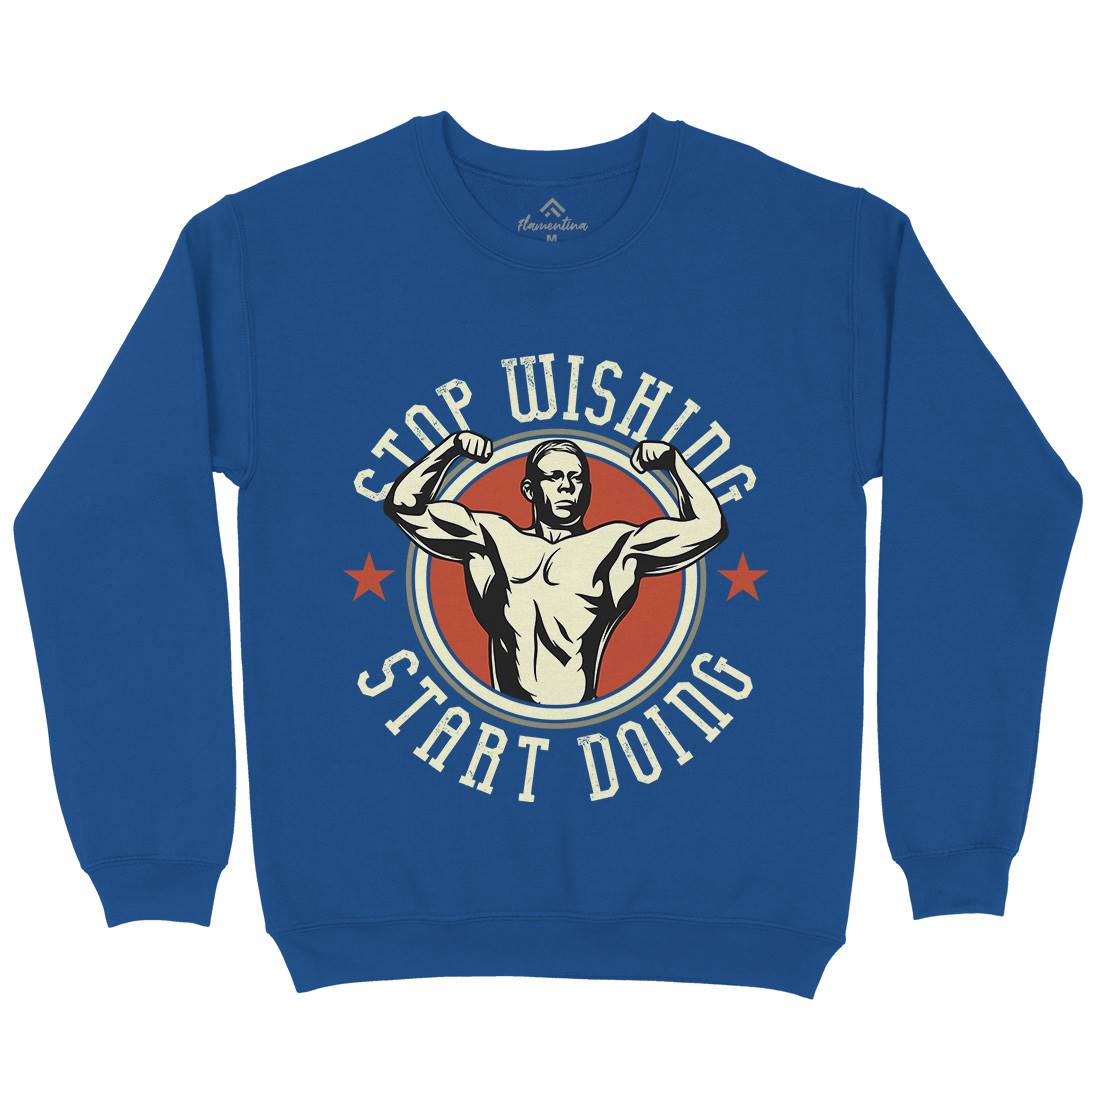 Stop Wishing Kids Crew Neck Sweatshirt Gym D985